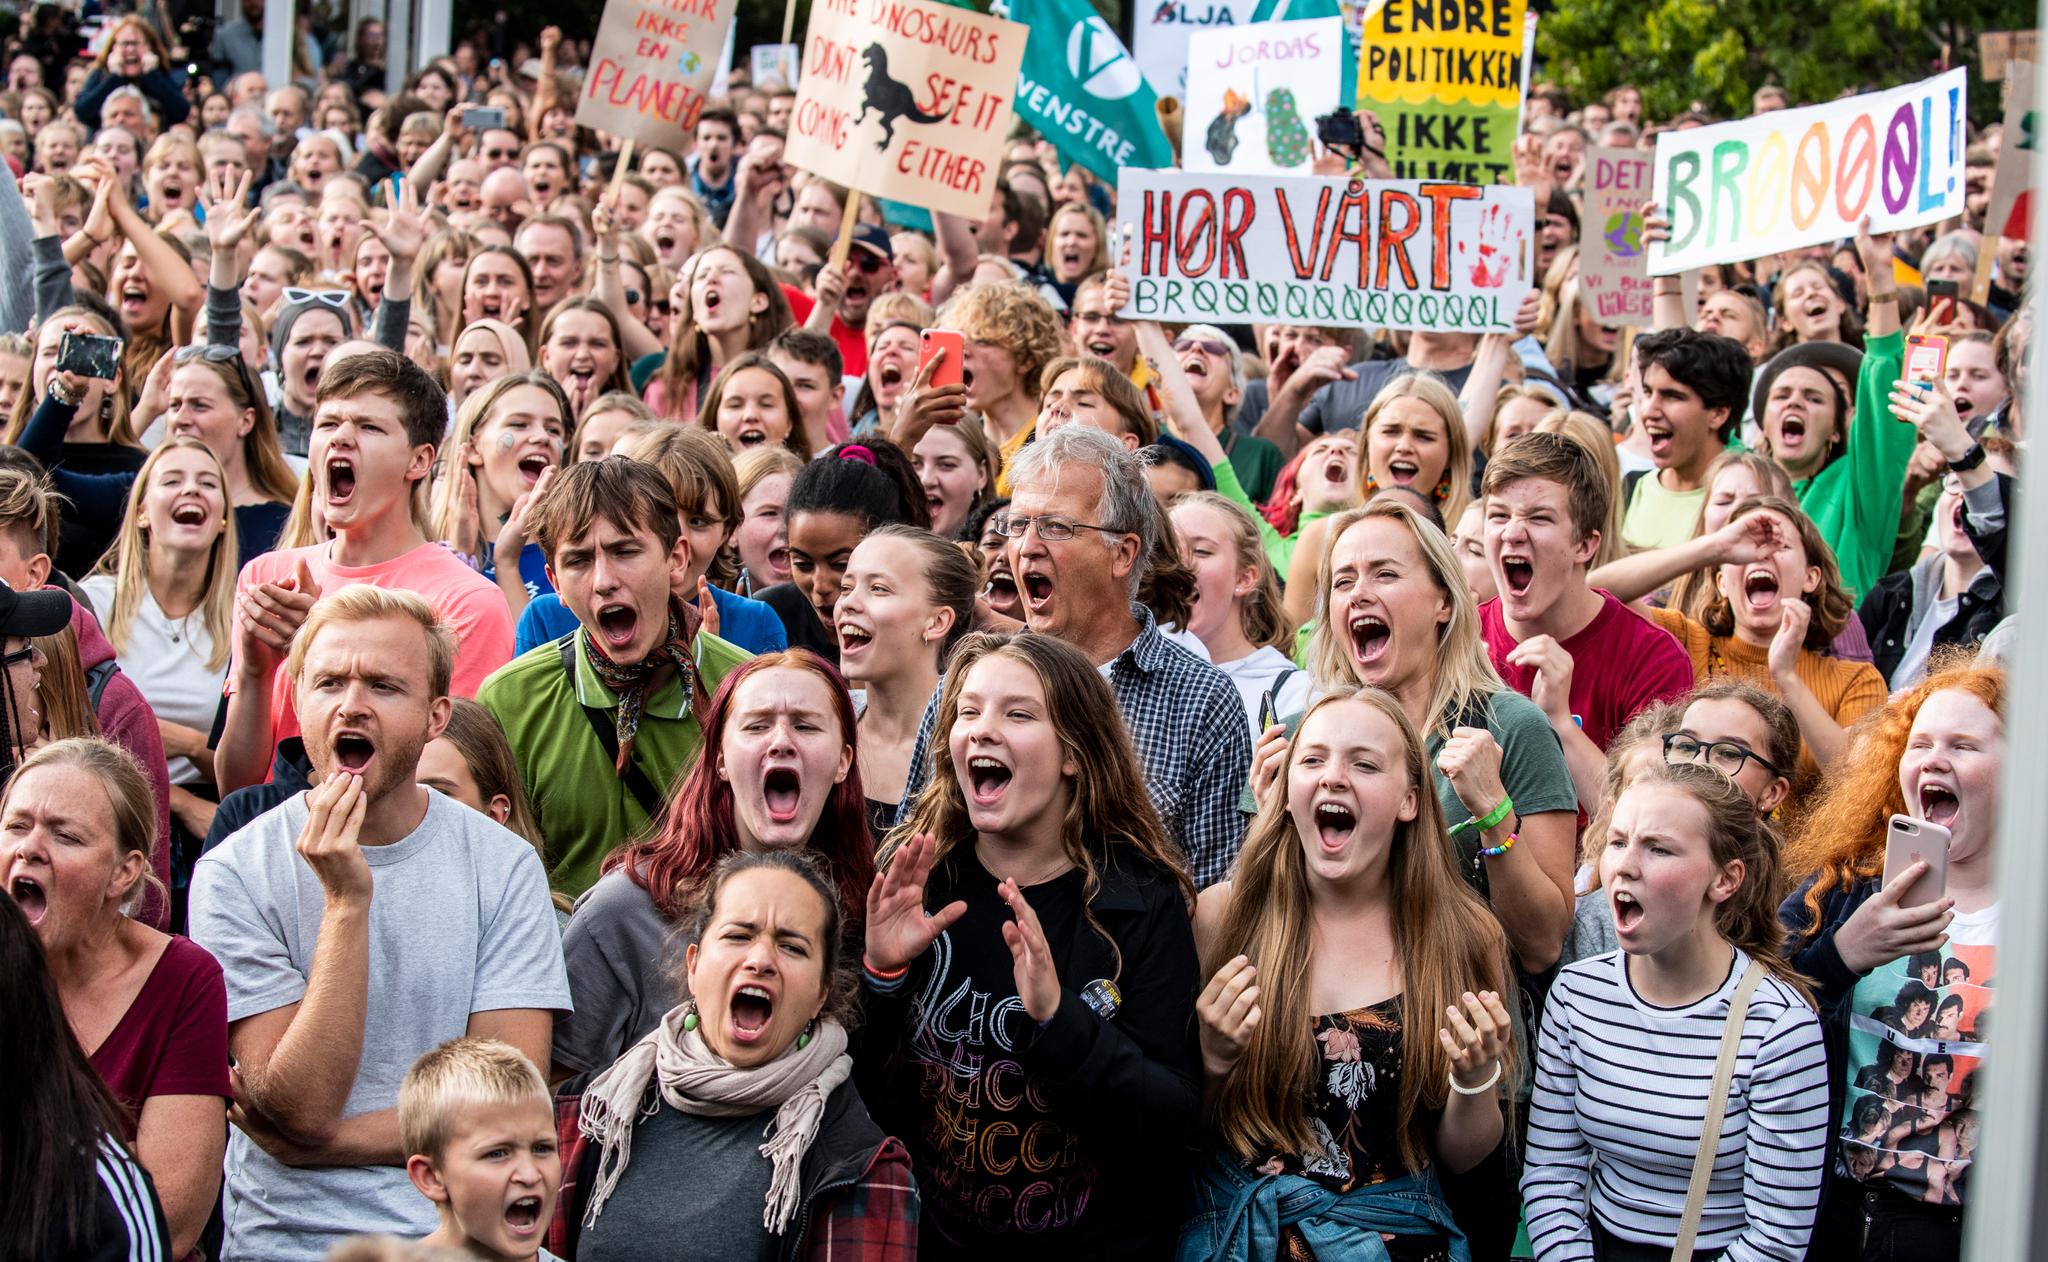 Voksenstrategien vil være å overøse de unge klimaaktivistene  med håp og priser, men ikke gjøre det de ber om, skriver debattanten. Her fra det såkalte «Klimabrølet» i Oslo i juni.